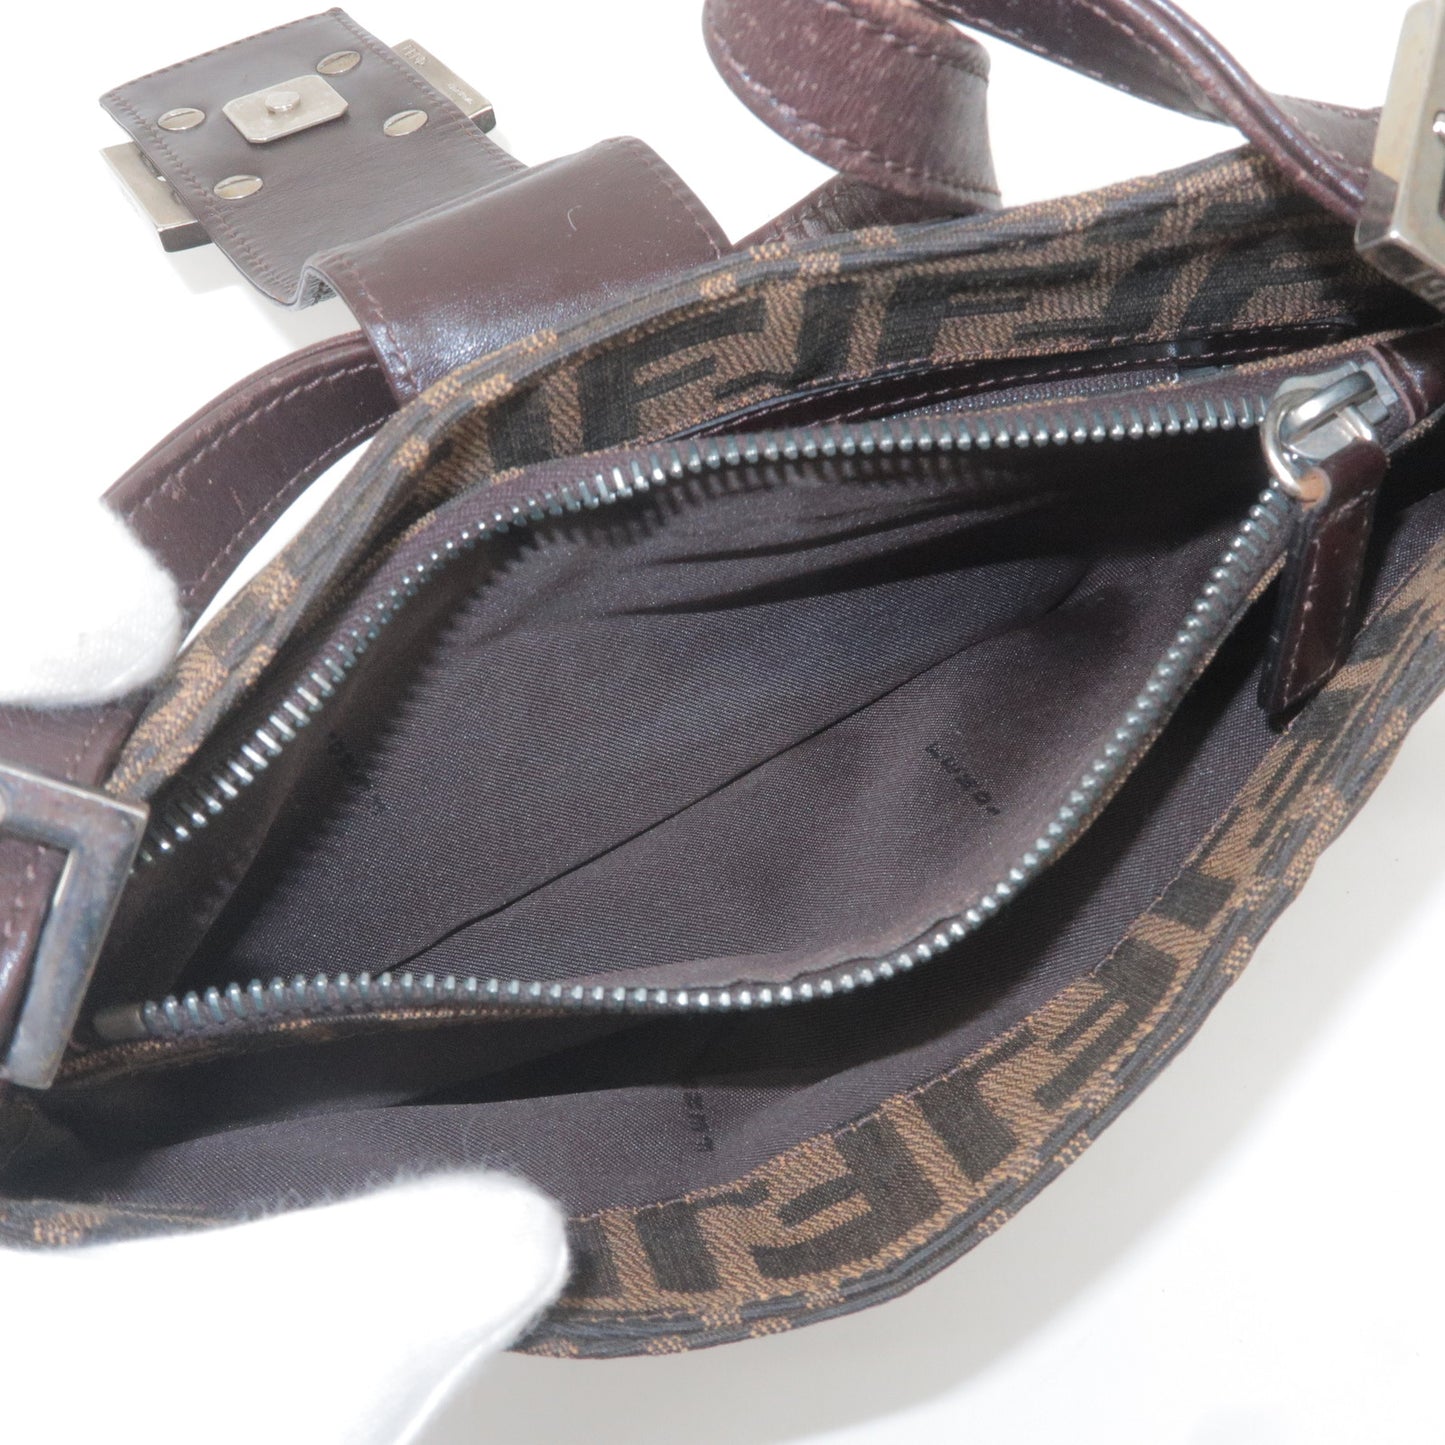 FENDI Zucca Canvas Leather Shoulder Bag Brown Black 0961153001